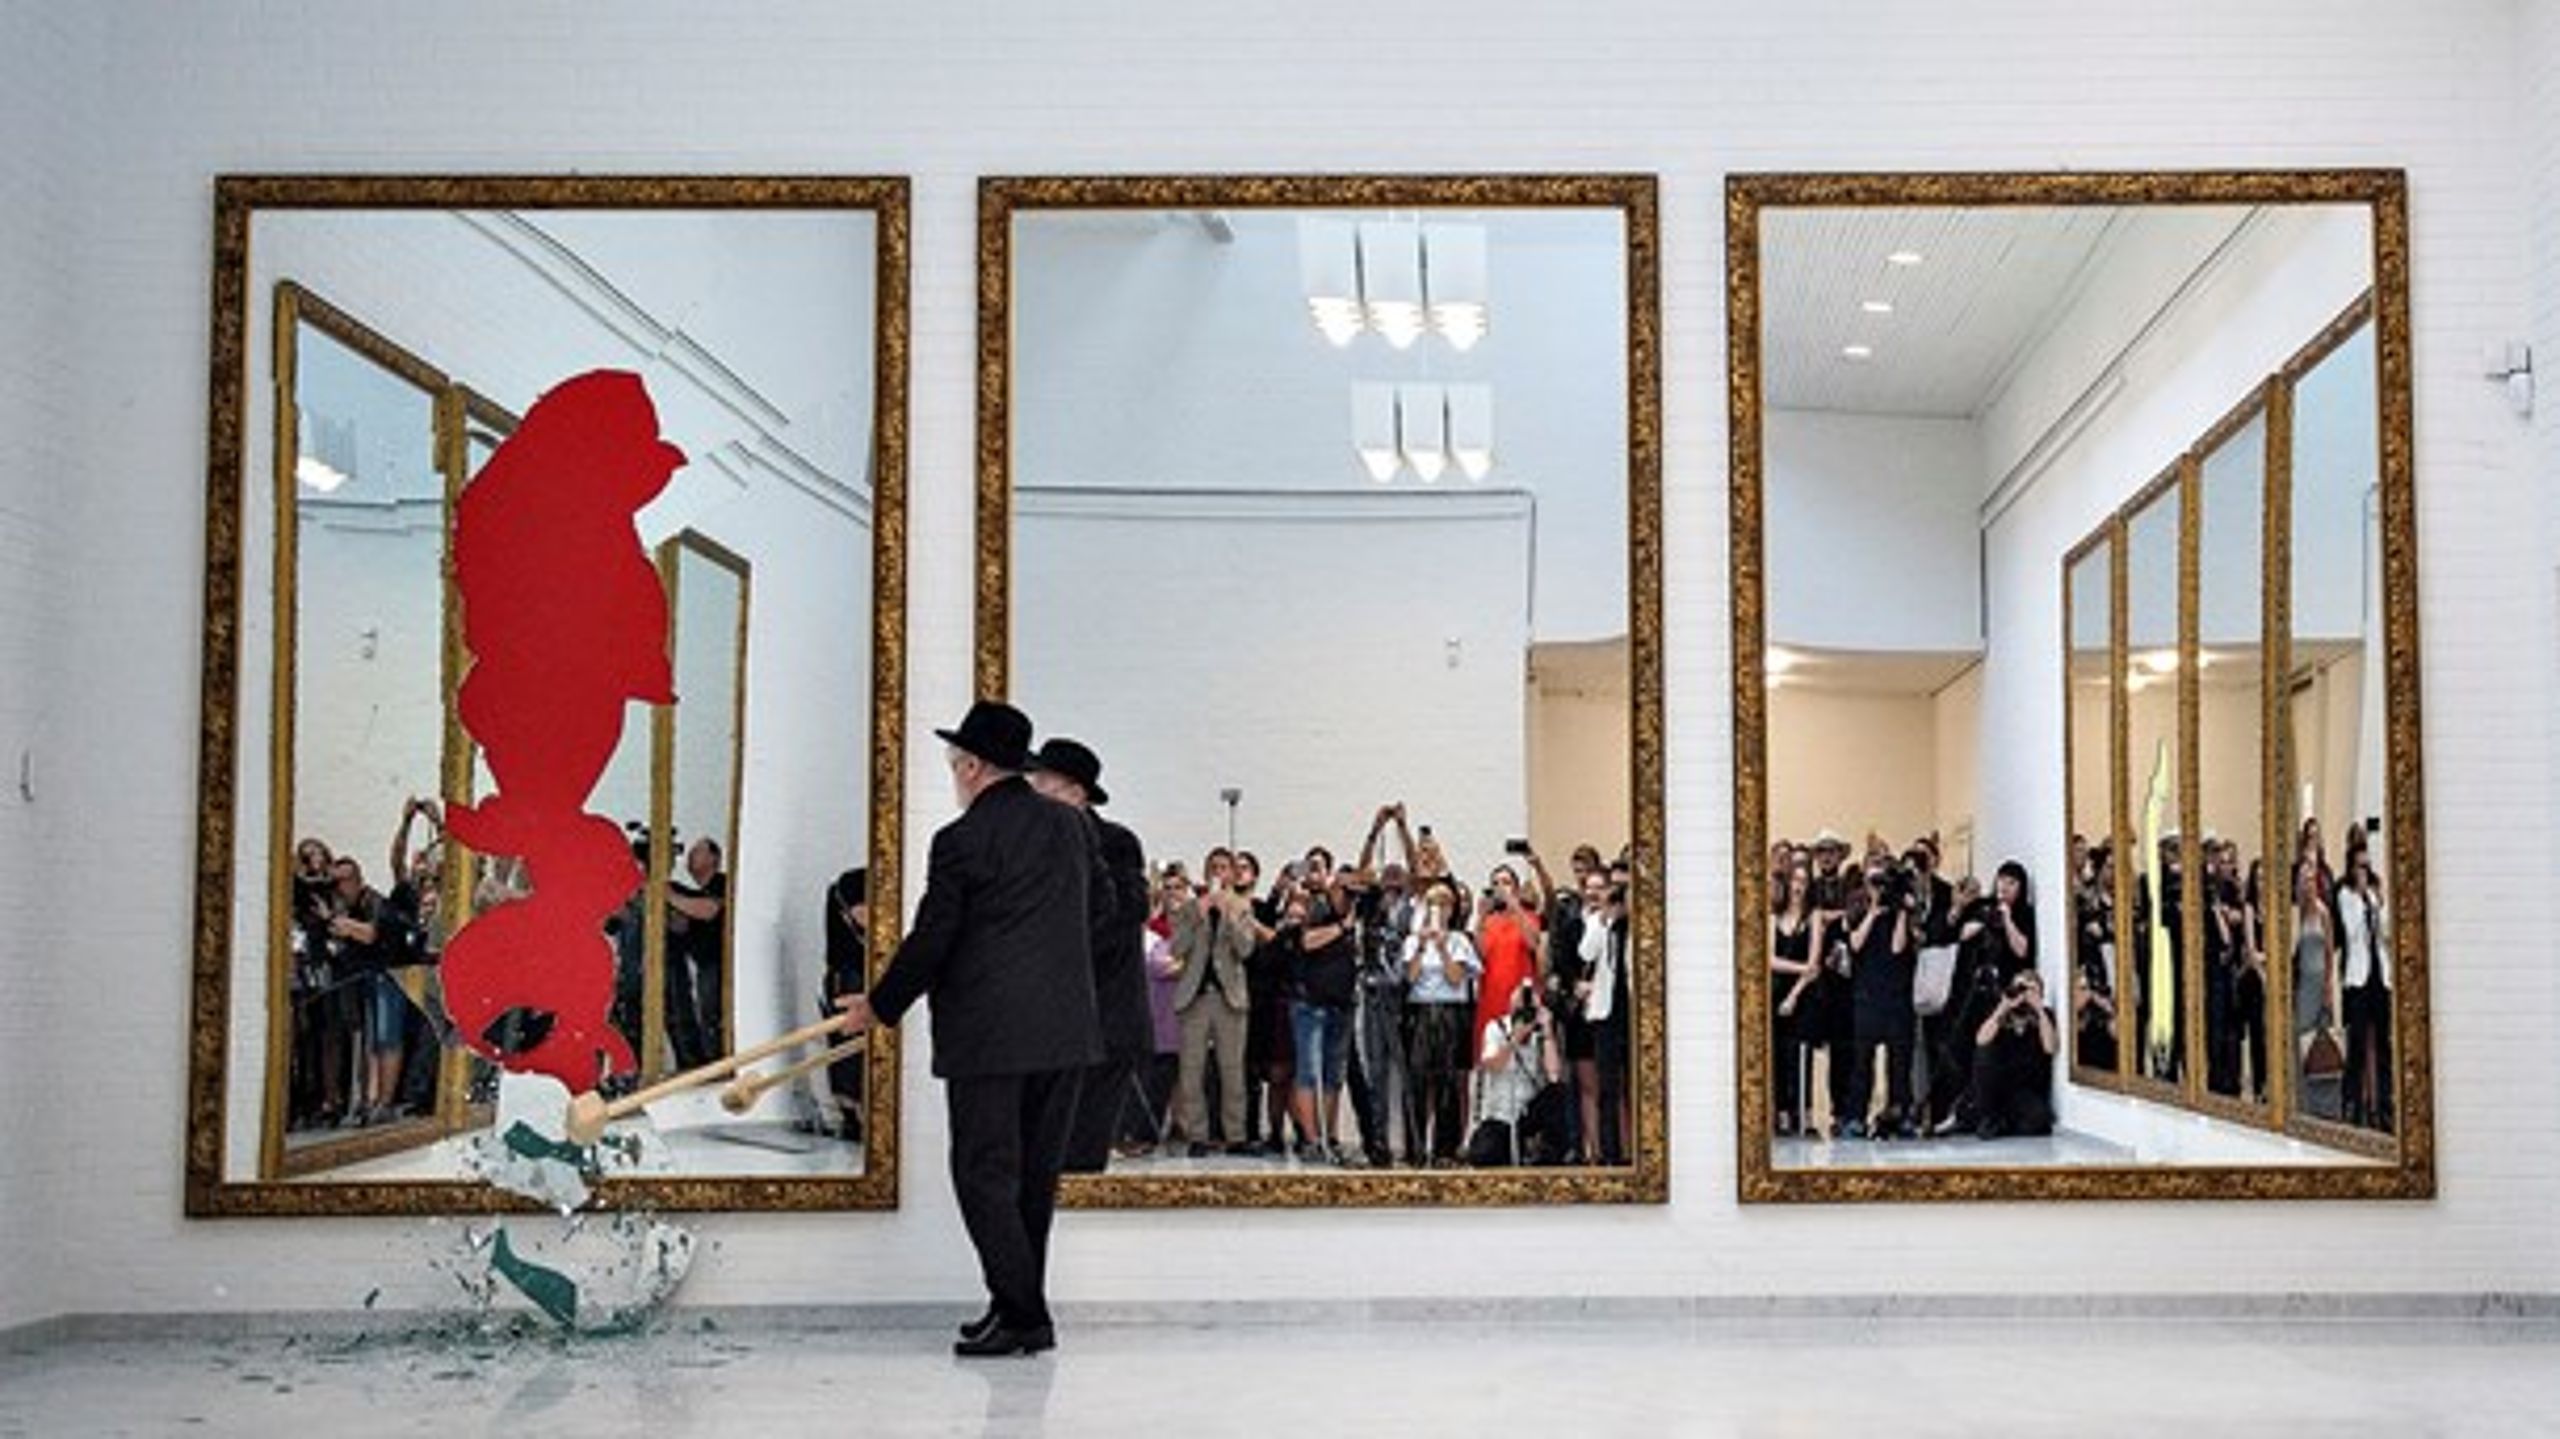 Publikum reflekteret på Kunsten i Nordjylland, der&nbsp;tilbage i 2016 overværede den verdensberømte italienske kunstner Michelangelo Pistoletto smadre 11 spejle og dermed fuldende kunstværket "Eleven Less One".<br>